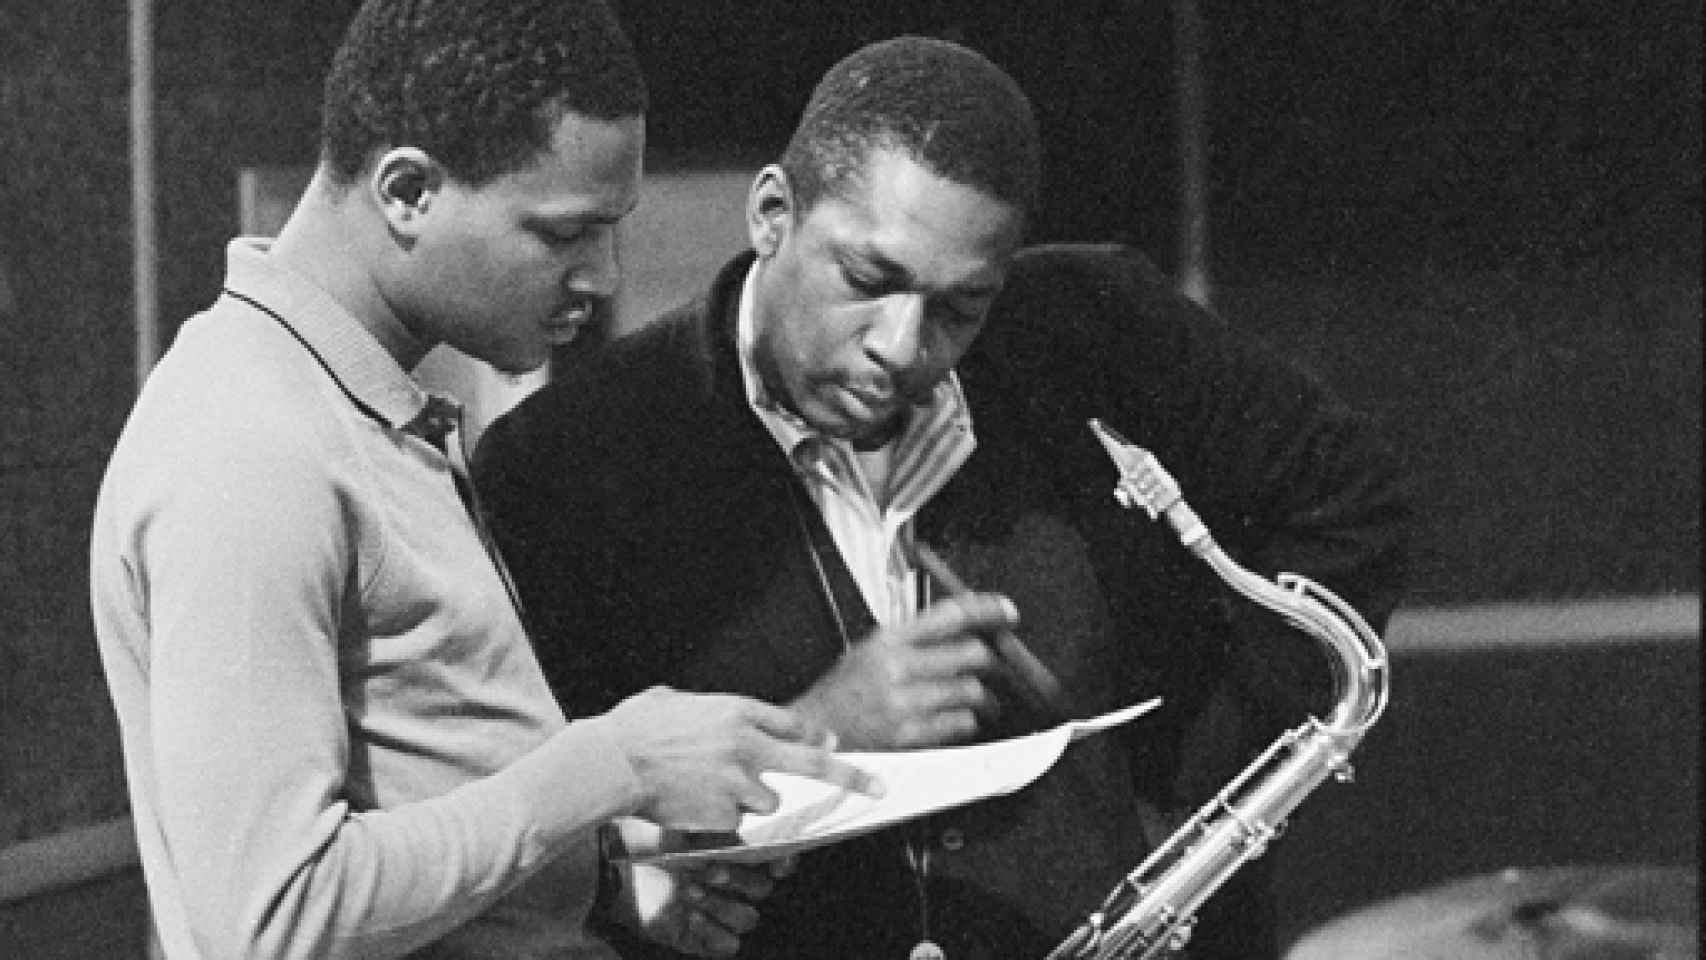 Image: Coltrane inédito, 55 años después